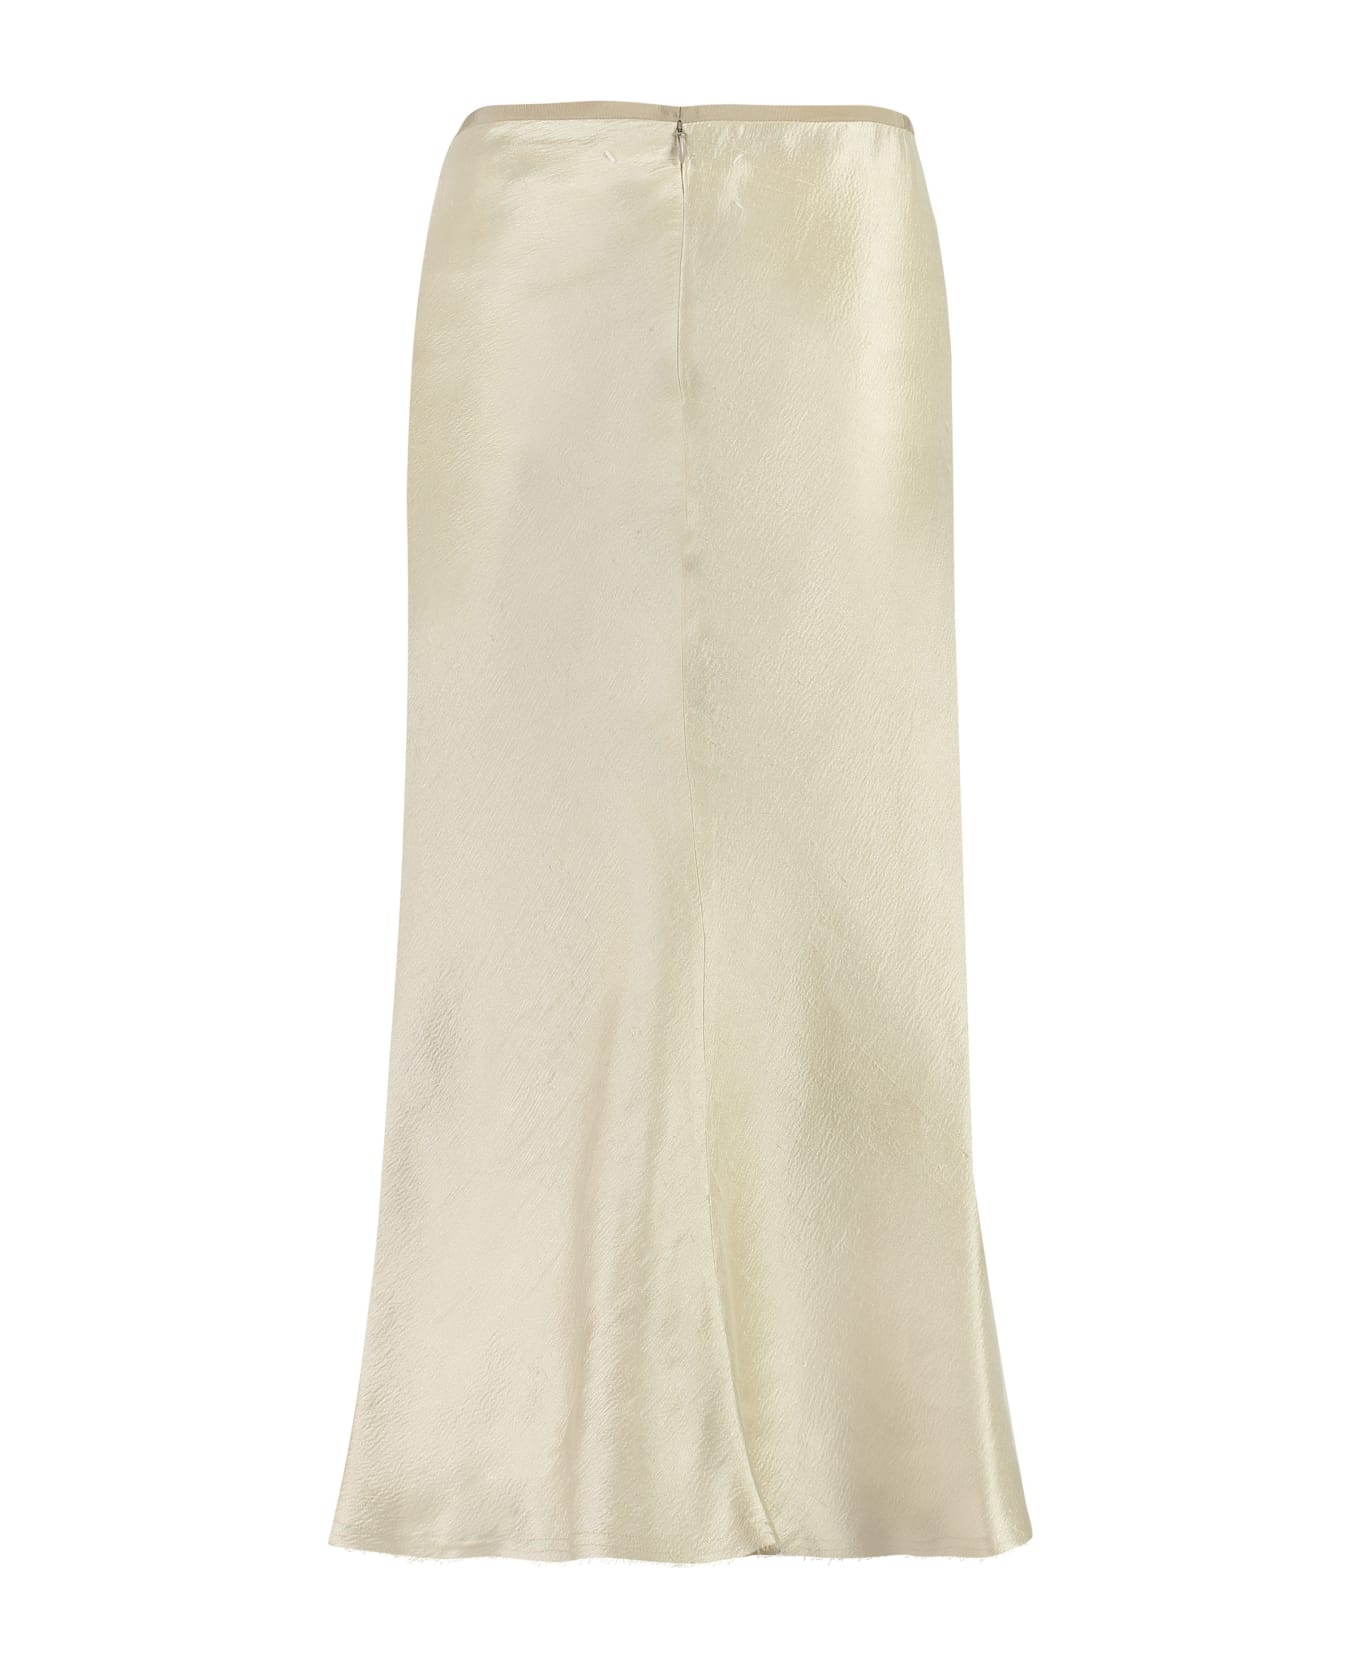 Maison Margiela A-line Skirt - Ivory